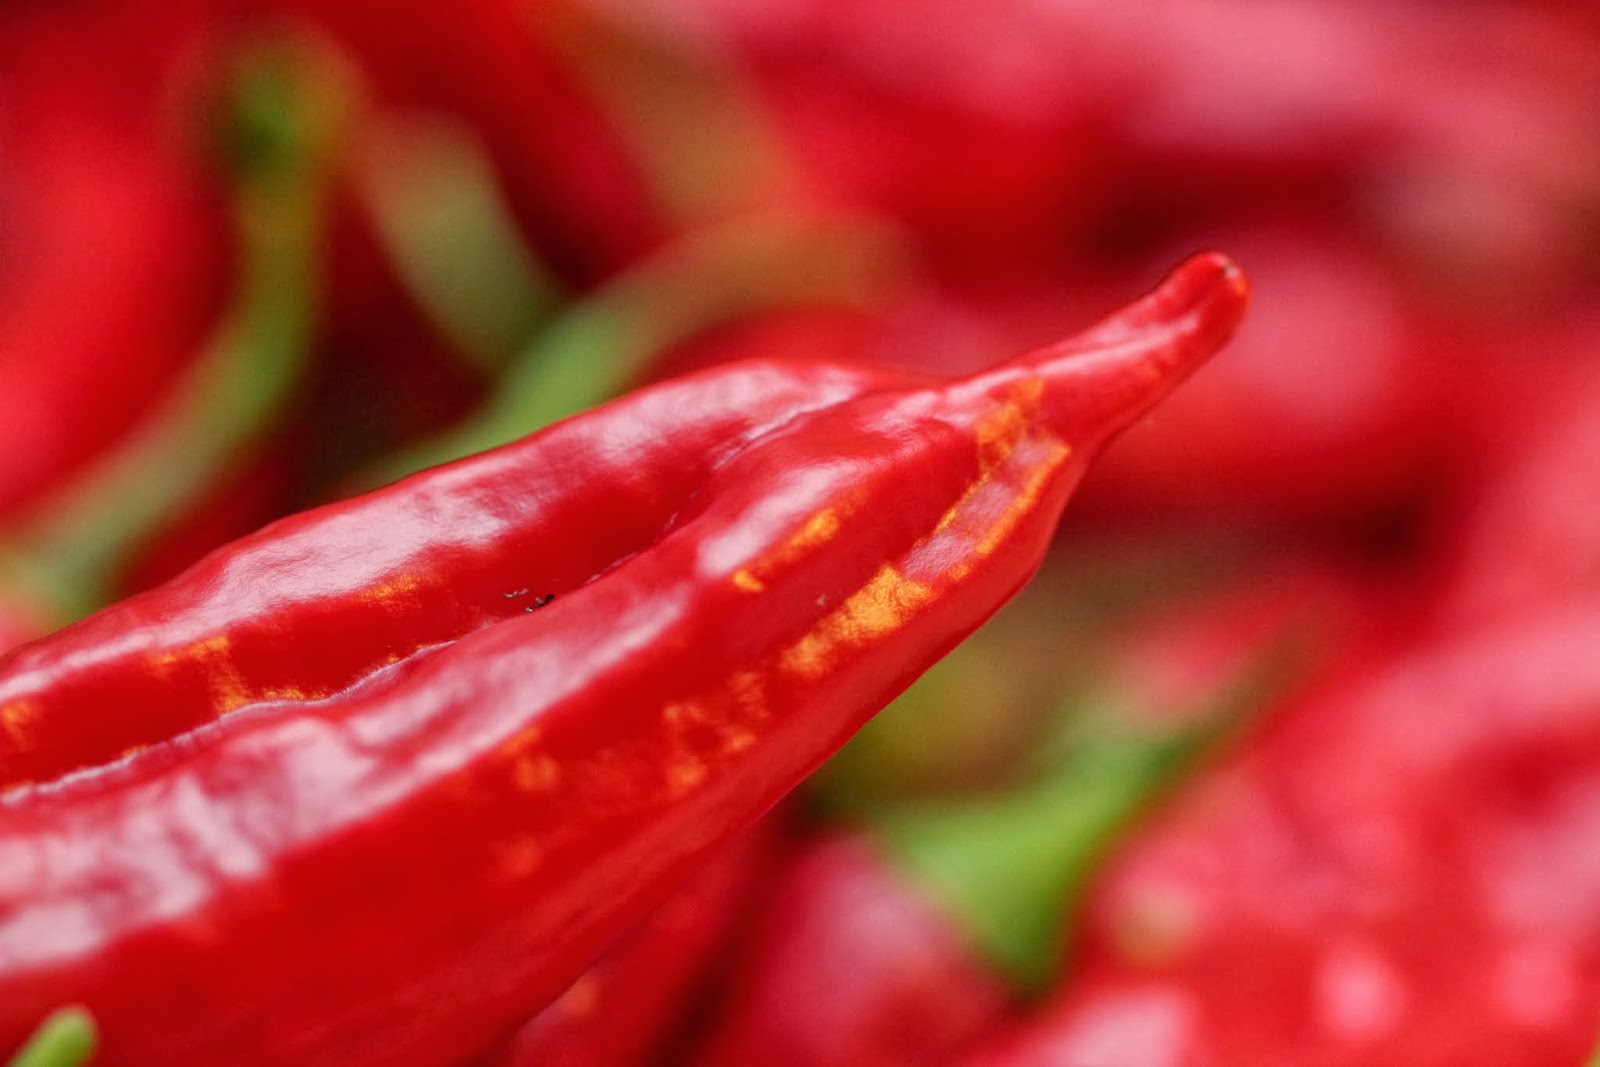 MyFoodBlogi: Harvesting chili